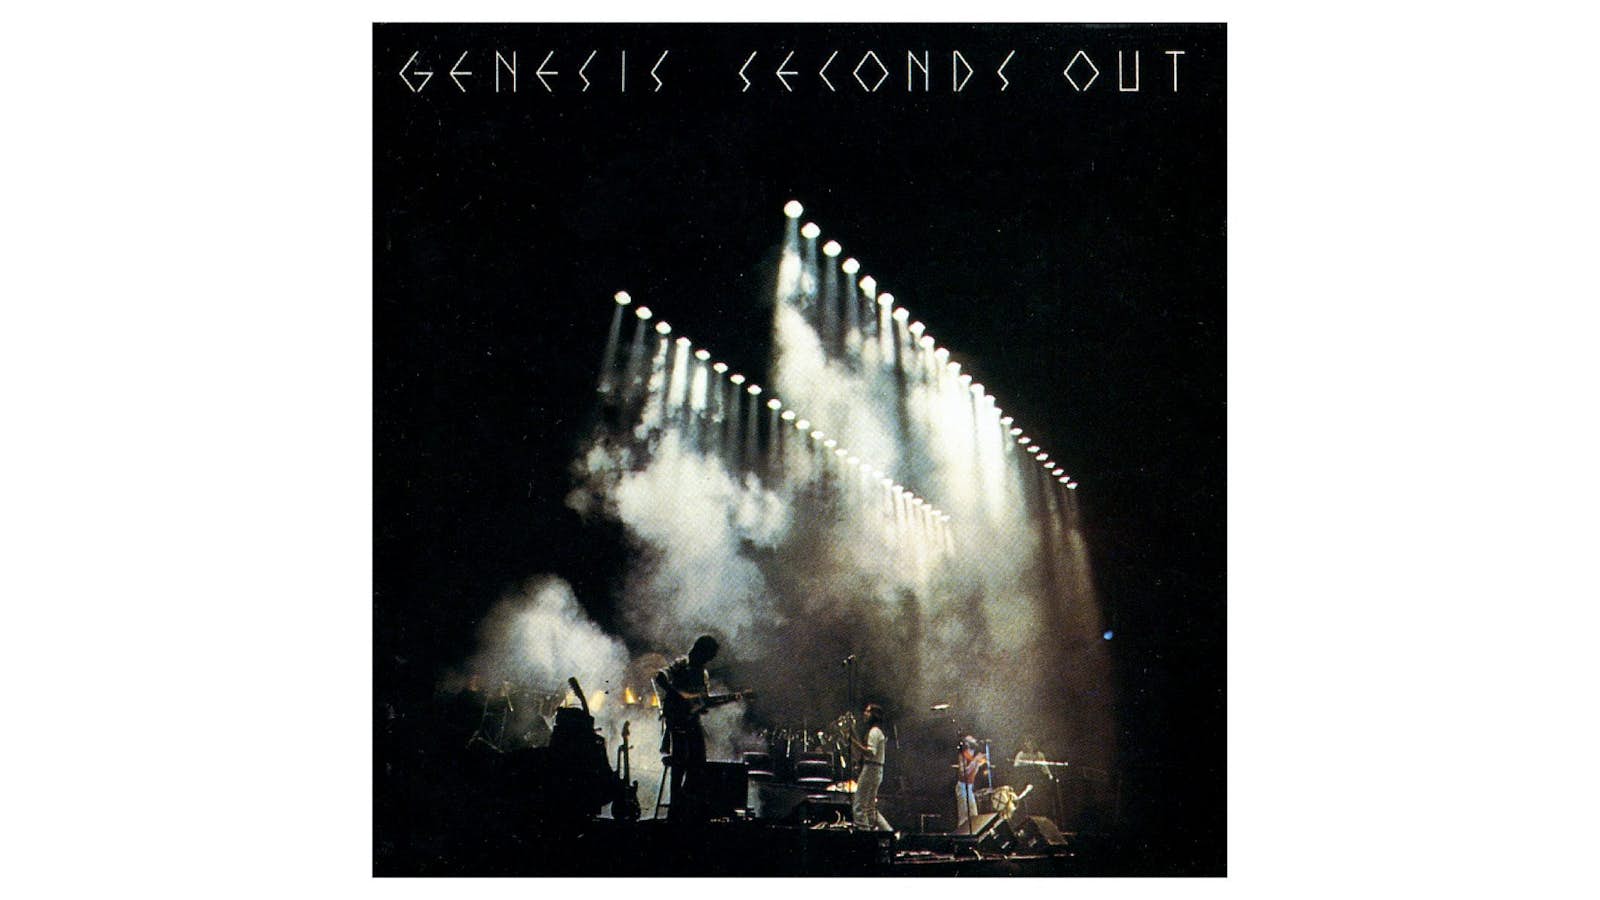 Genesis Seconds Out Vinyl (2-disc) LP